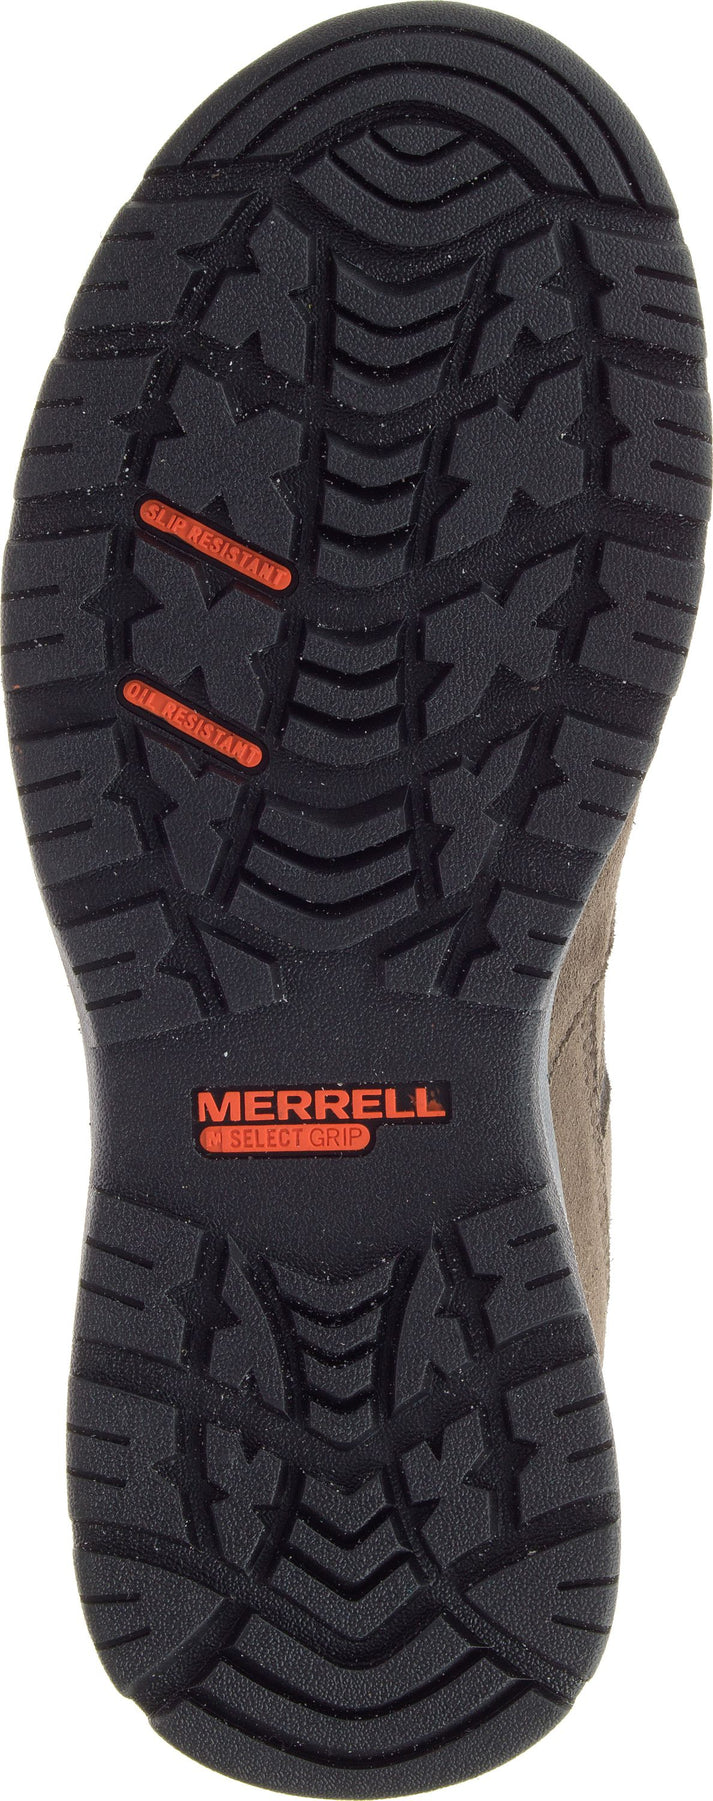 Merrell Boots Women's Windoc Mid Waterproof Csa Steel Toe Boulder